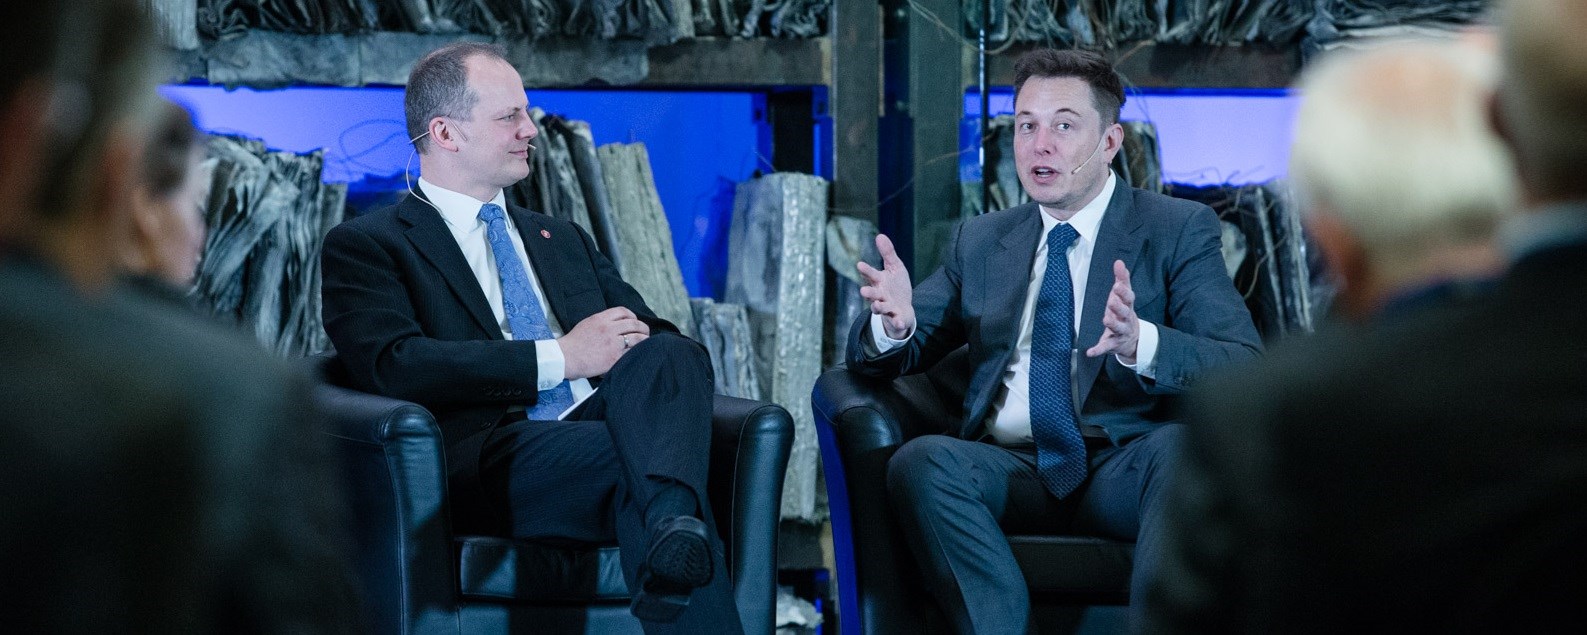 Men hvorfor vil Elon Musk kjøpe Twitter, og hvorfor er det en kontroversiell handel? spør Tor W. Andreassen i Dagens Perspektiv. Foto: Daværende samferdselsminister Ketil Solvik-Olsen (Frp) og Elon Musk (Samferdselsdepartementet)